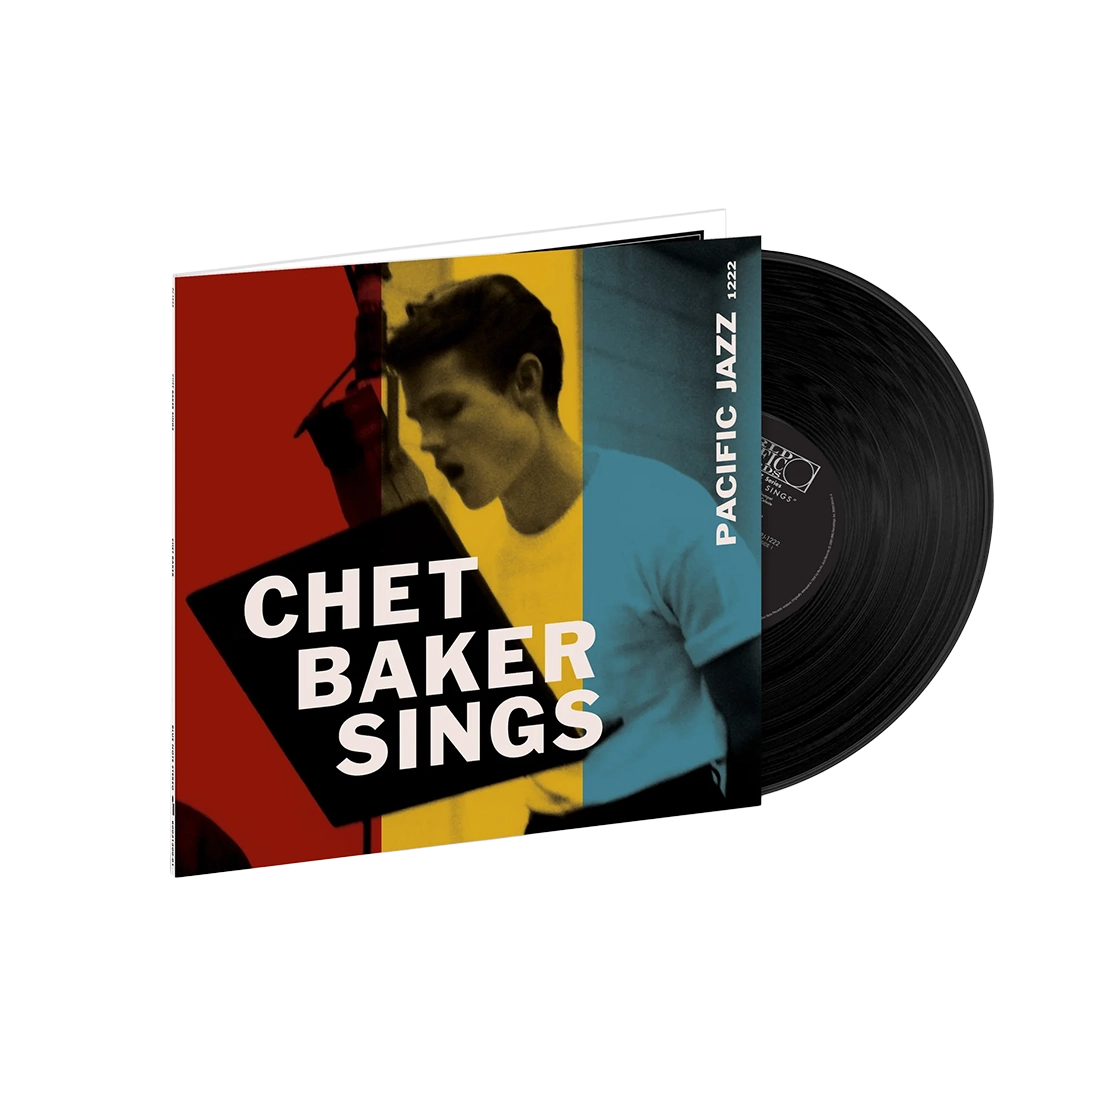 Chet Baker - Chet Baker Sings: Vinyl LP